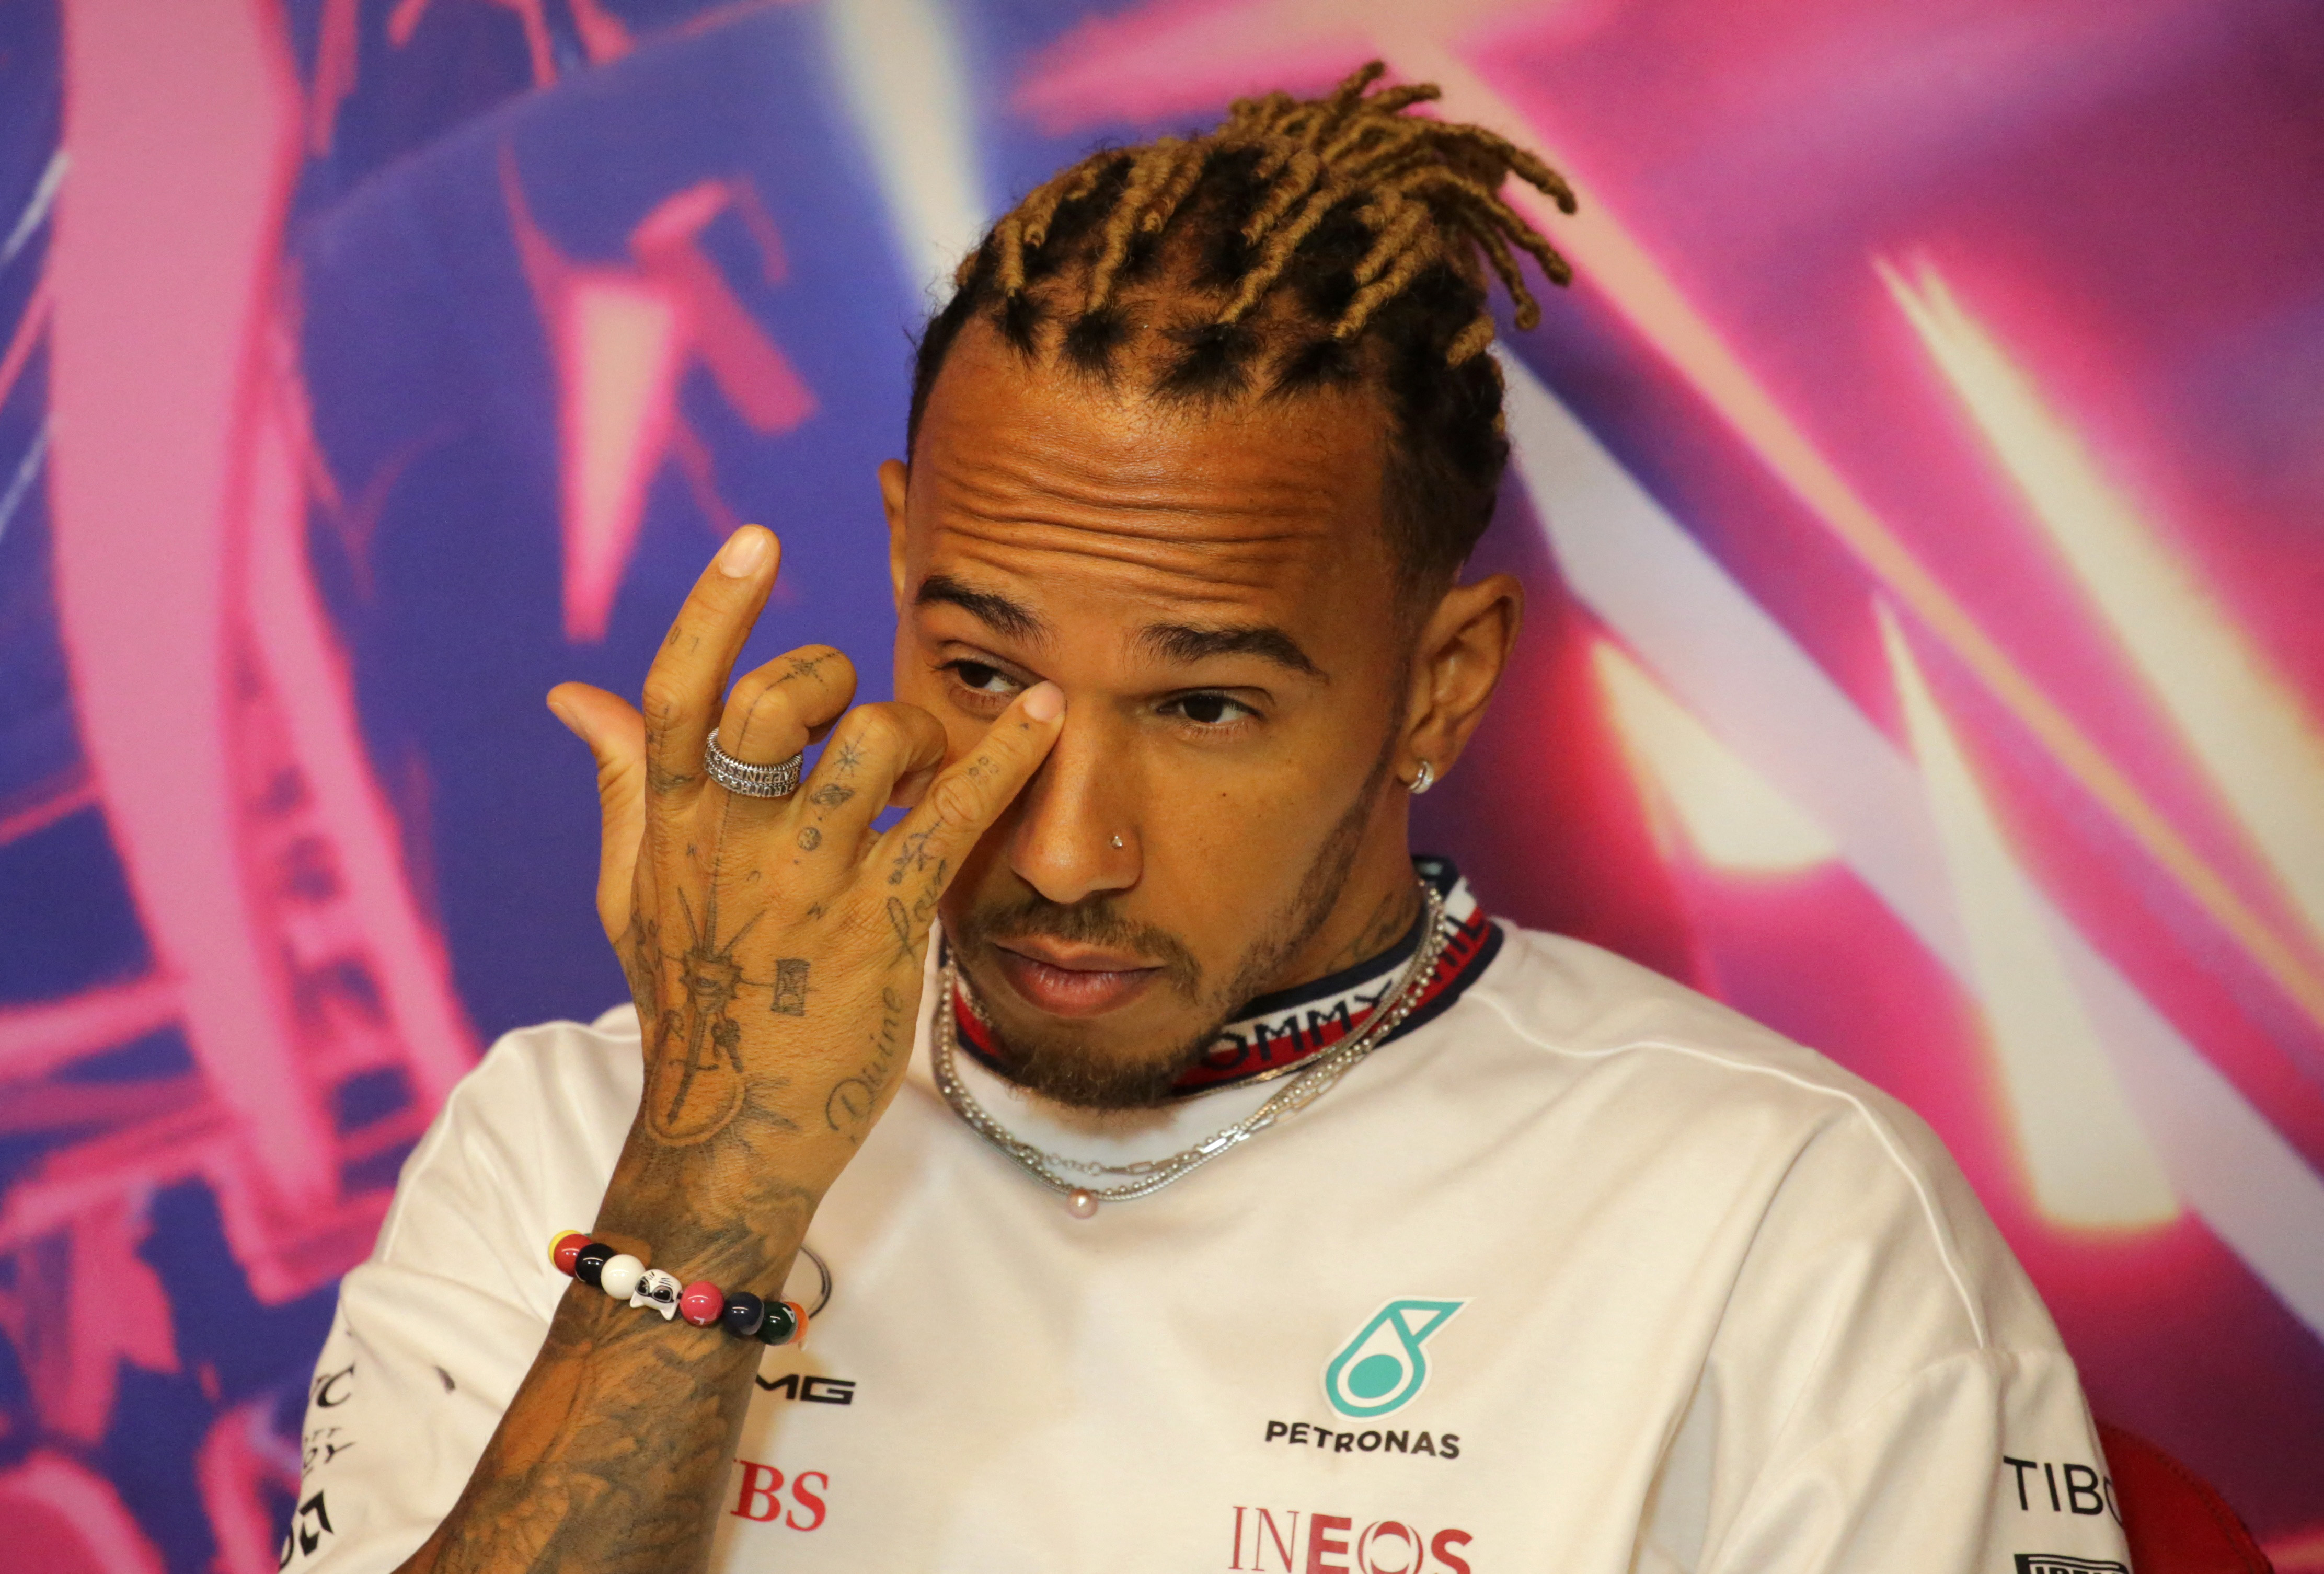 Lewis Hamilton pidió cambiar las “mentalidades arcaicas” tras el término racista que utilizó Nelson Piquet